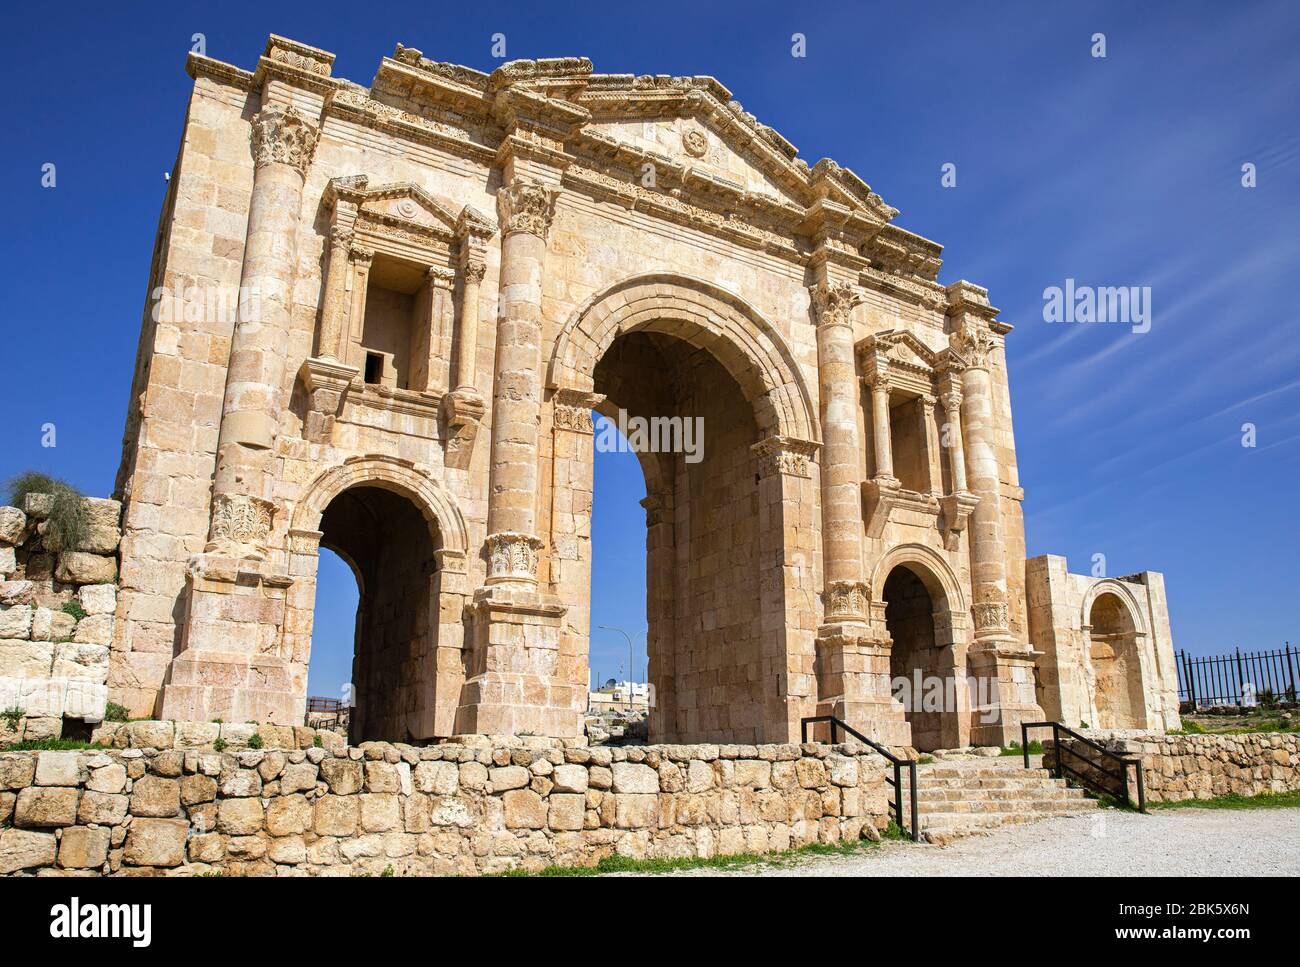 Arco di Adriano al sito archeologico di Jerash, dove si trova l'antica rovine romane, Giordania Foto Stock